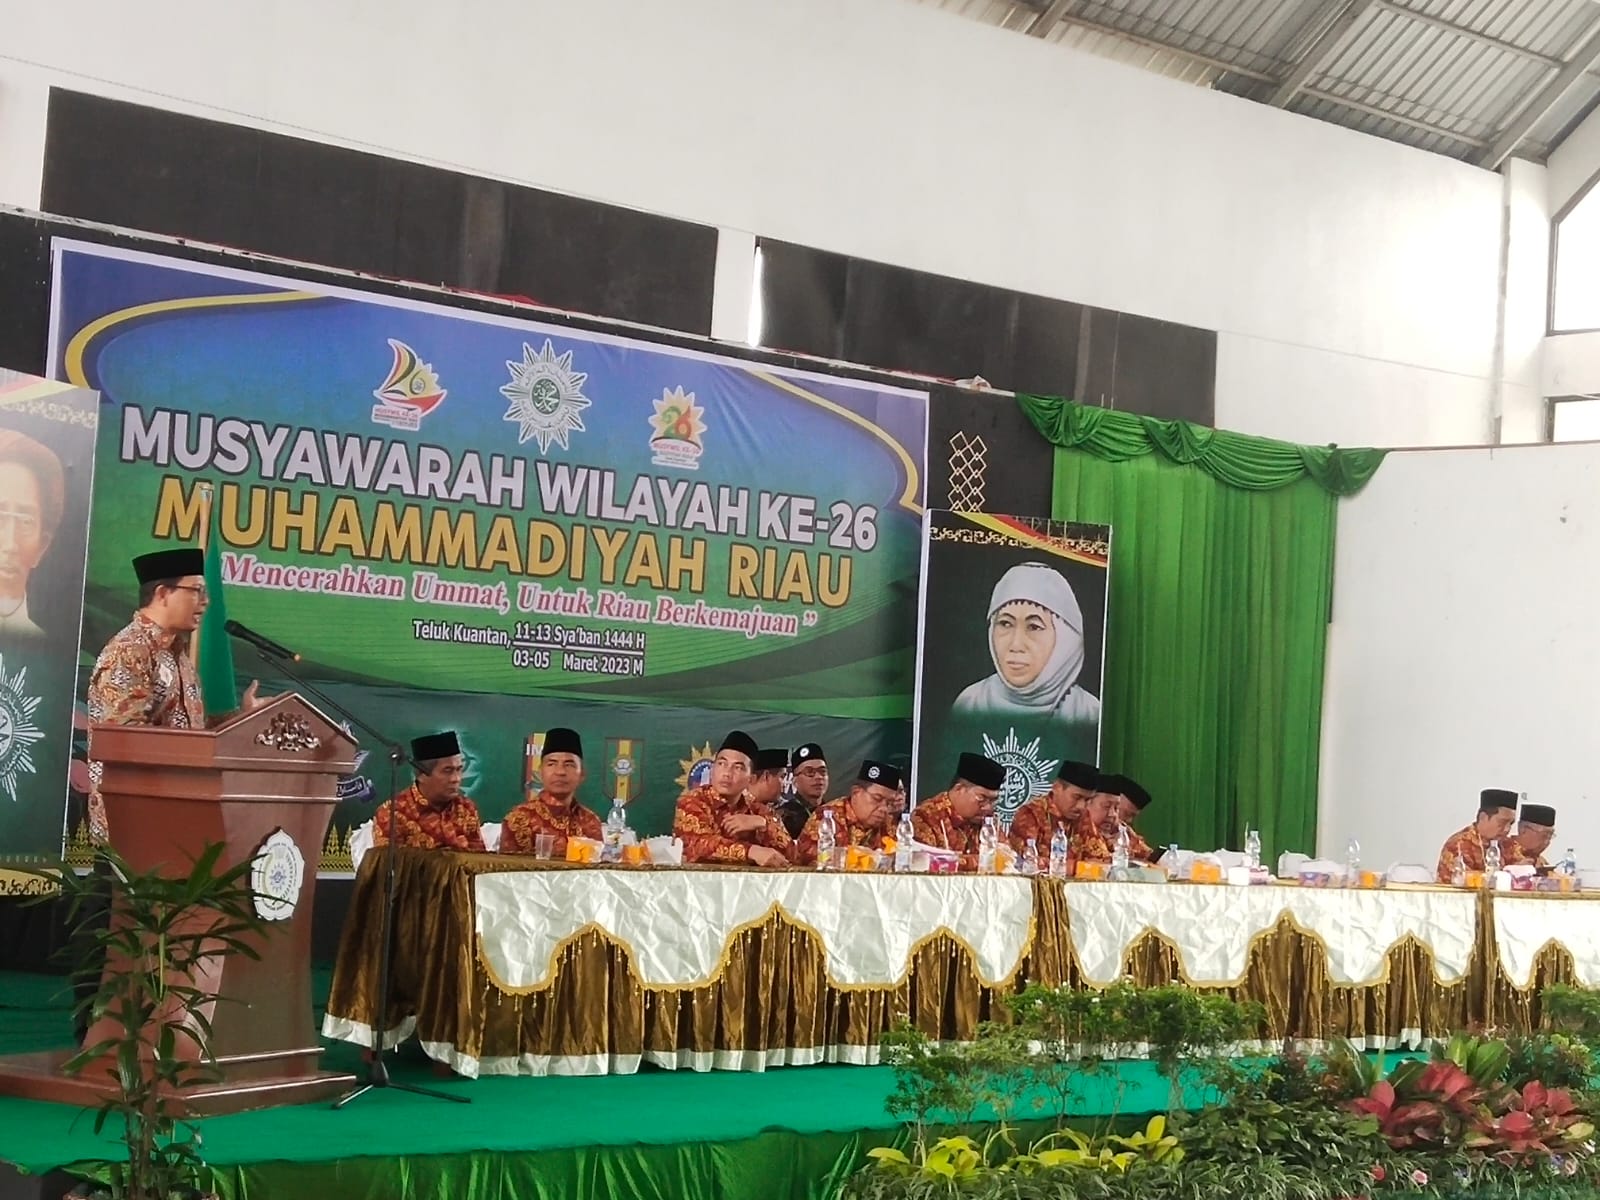 Musyawarah Wilayah ke-26 Muhammadiyah di Kuansing